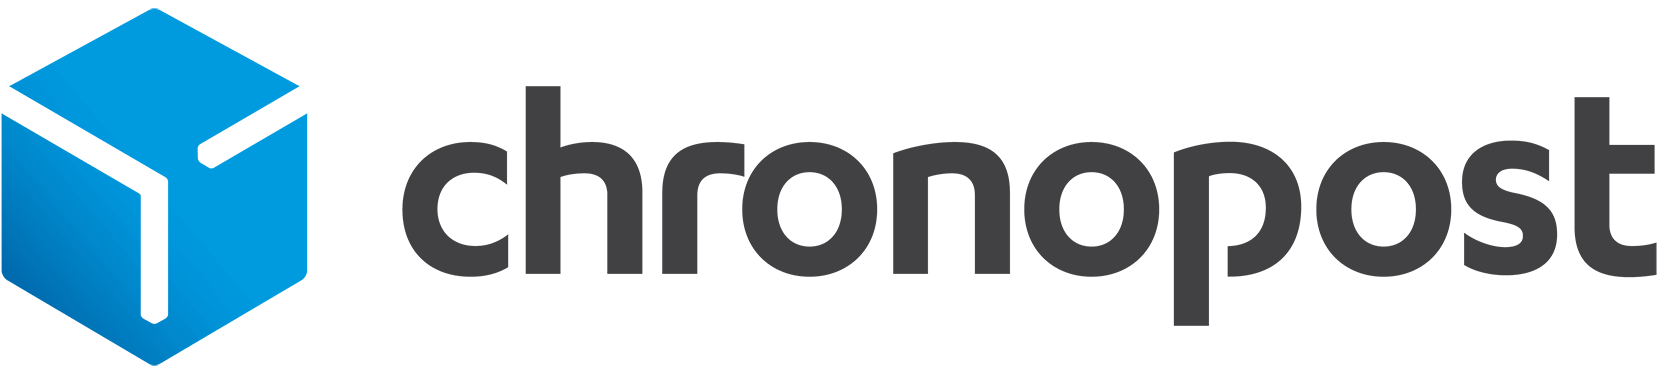 Chronopost carrier logo